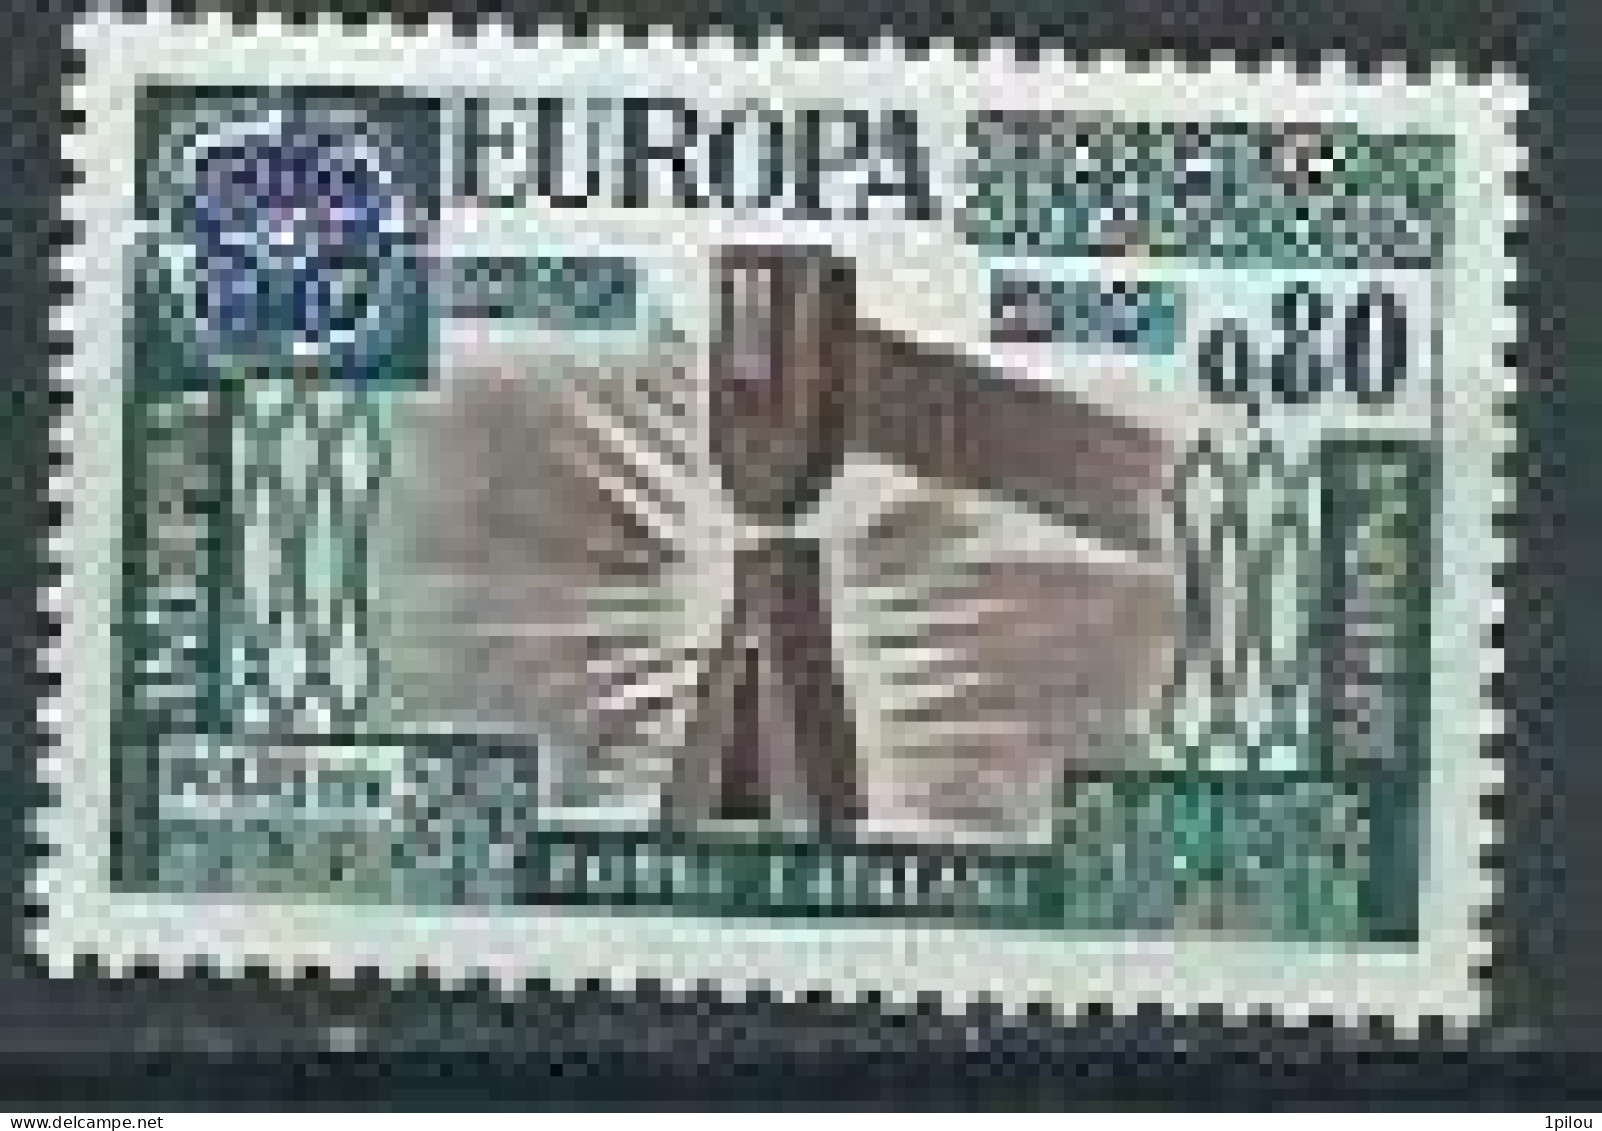 N° 253 ** - Unused Stamps